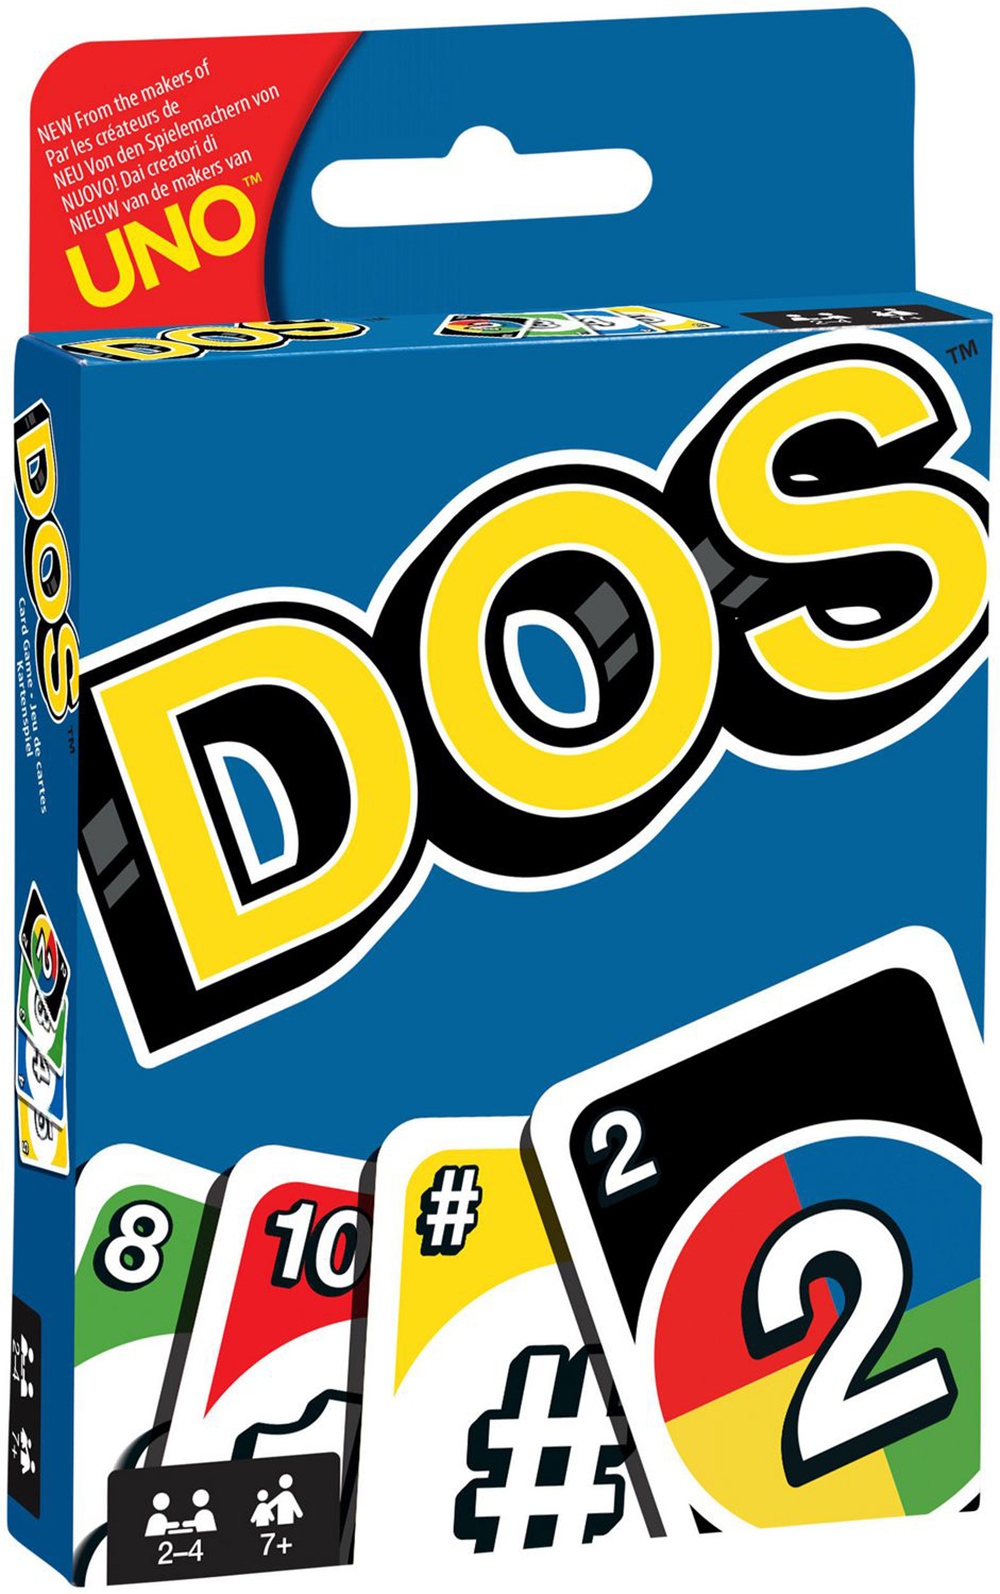 Boîte du jeu Uno - DOS